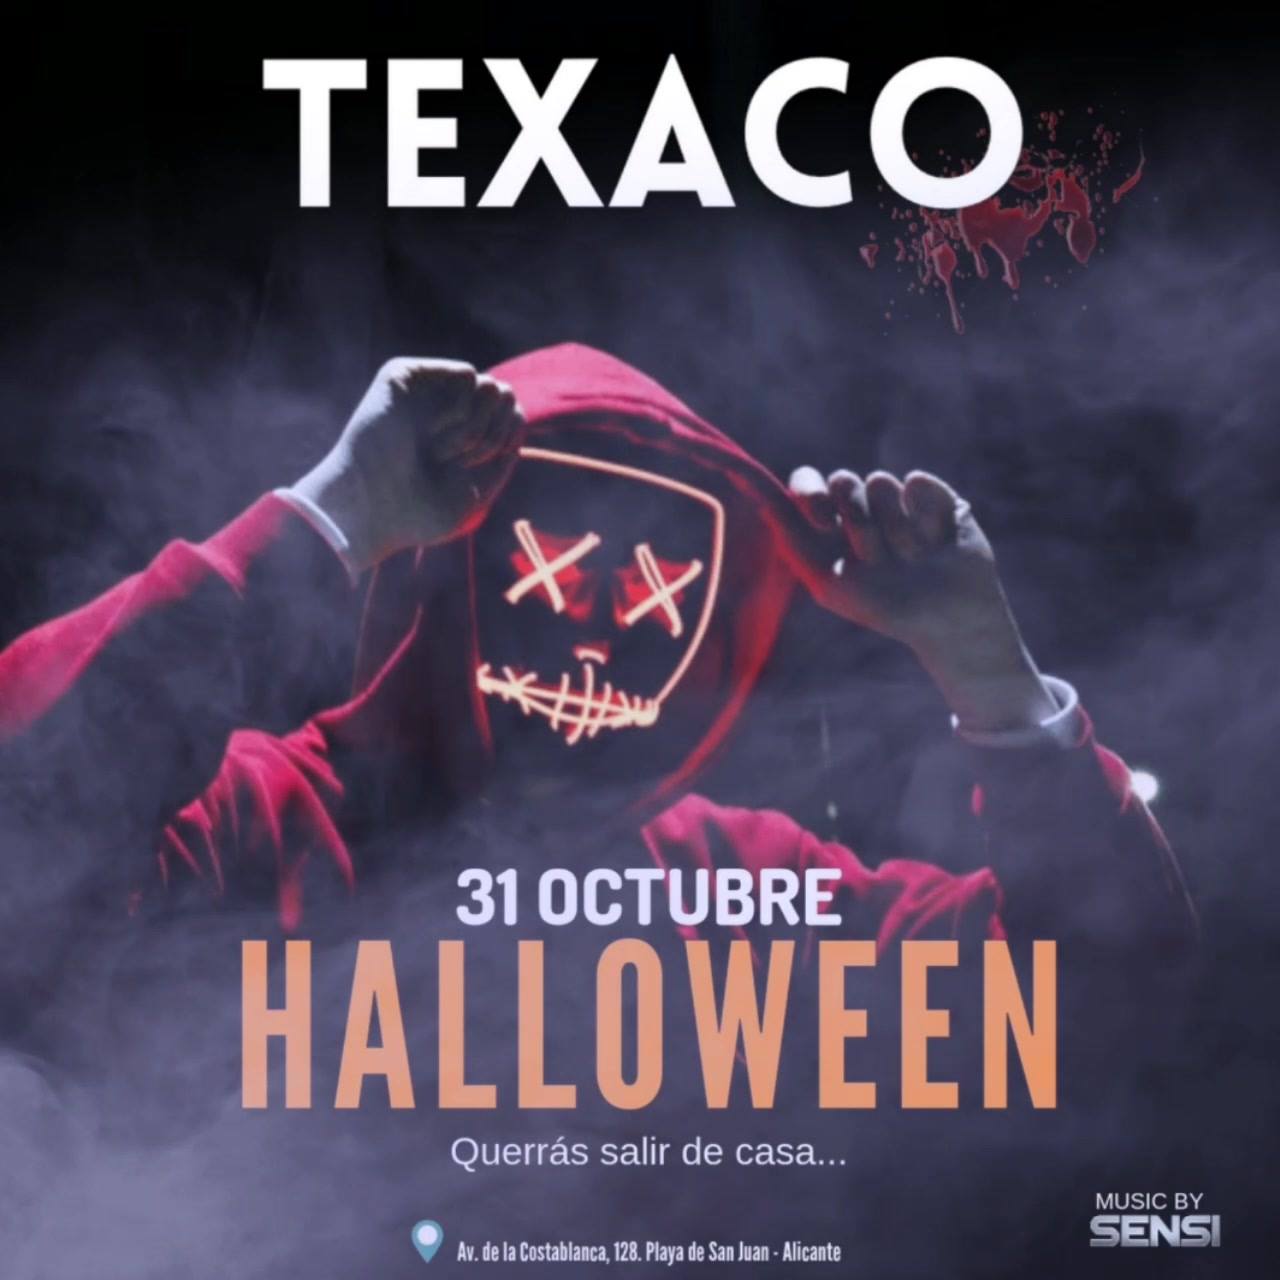 Halloween 2018 en Texaco